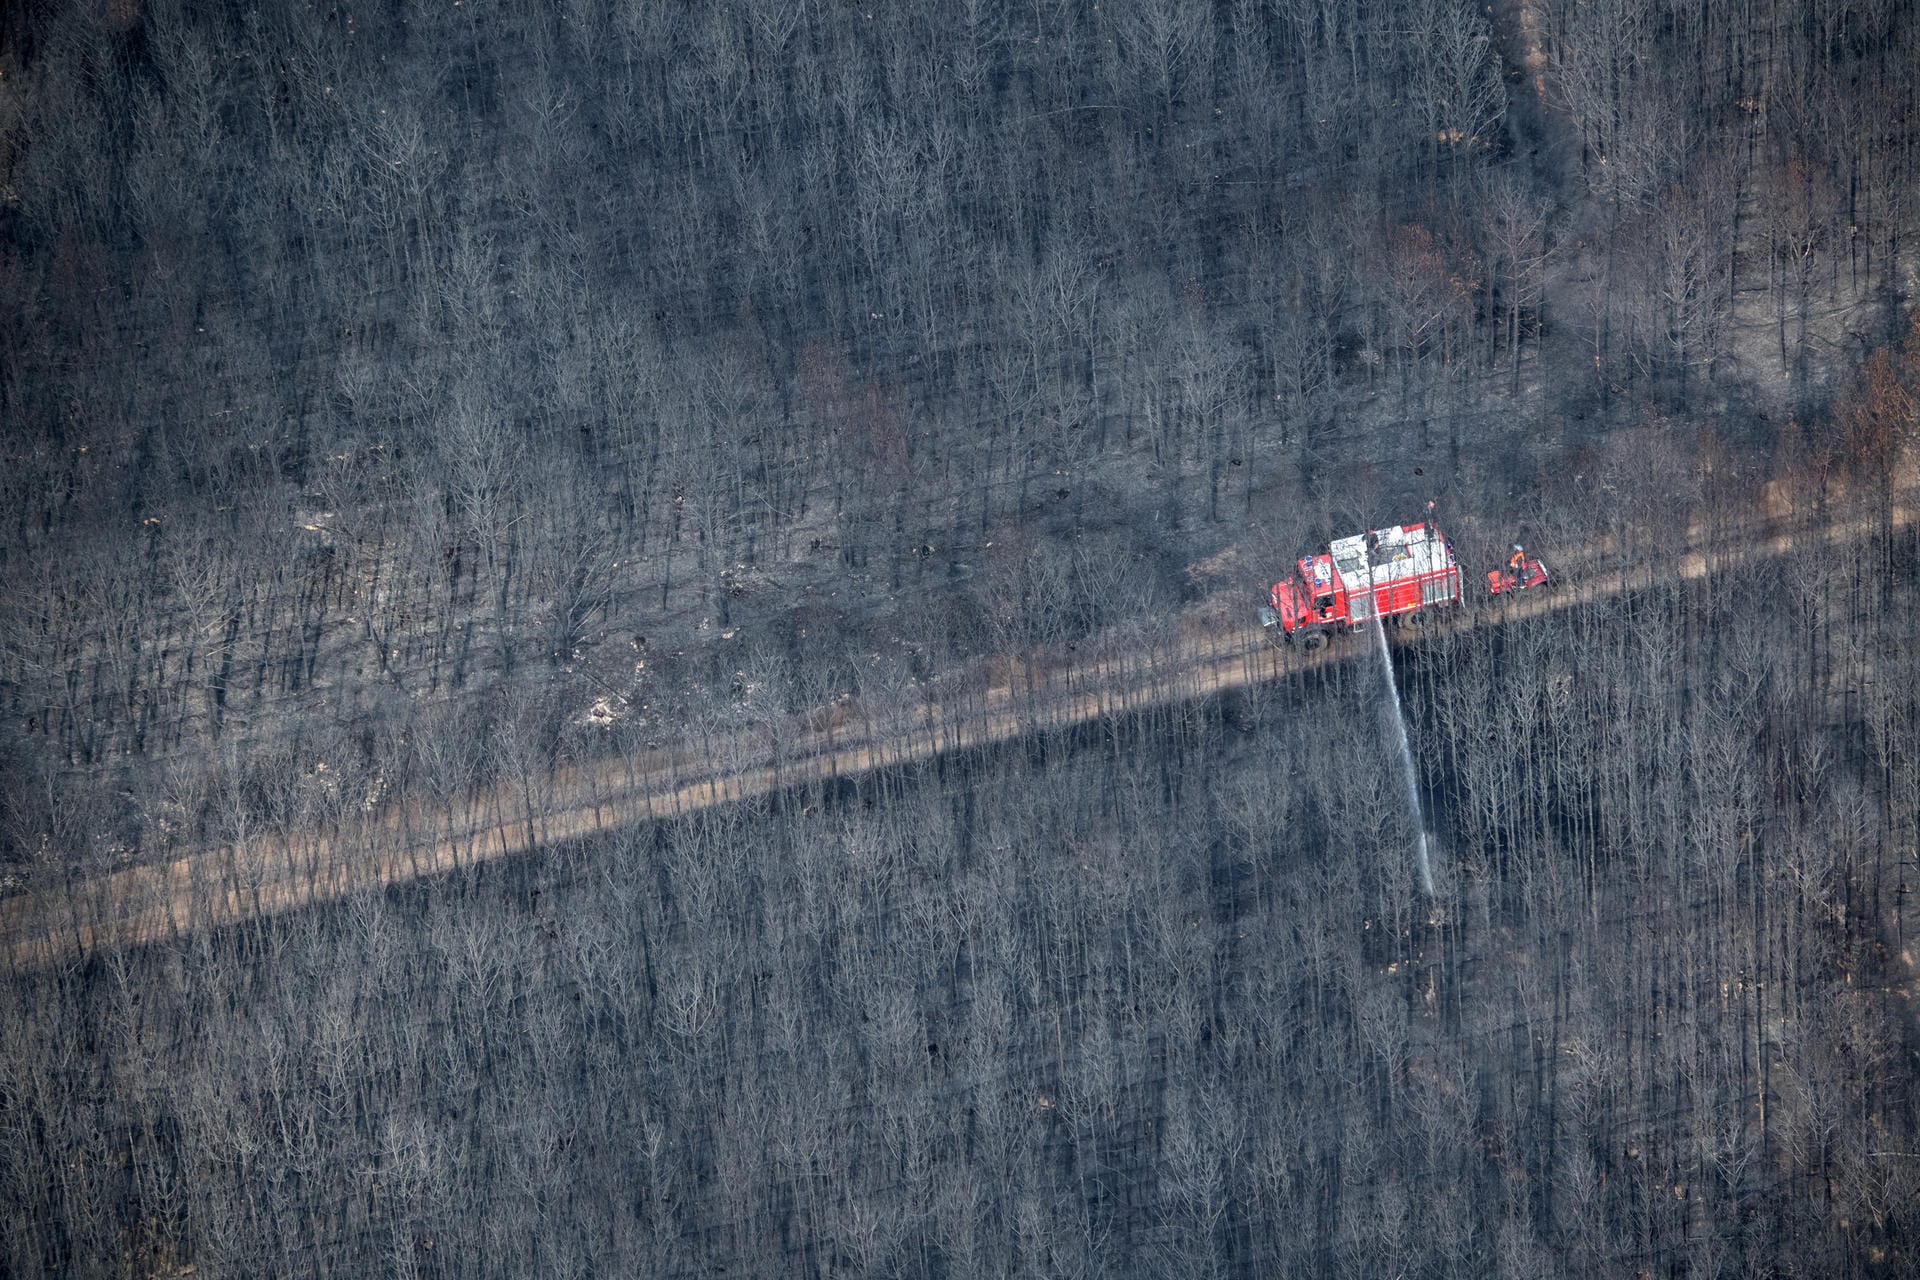 Ein Löschfahrzeug der Feuerwehr patrouilliert in einem verbrannten Kiefernwald.